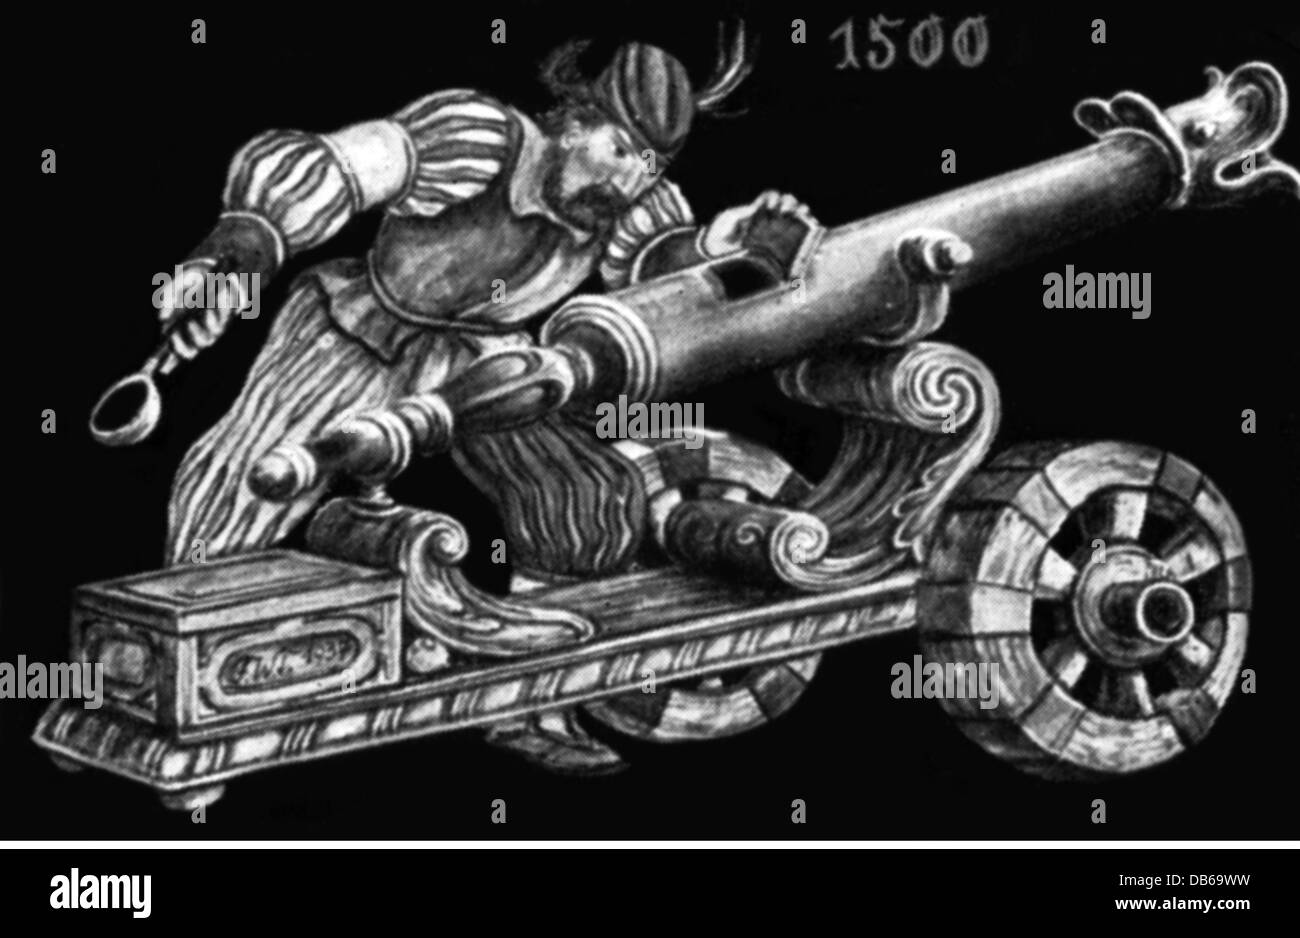 Militaire, artillerie, arme à feu et artileryman, 1500, illustration après une frise "le développement du canon", droits additionnels-Clearences-non disponible Banque D'Images